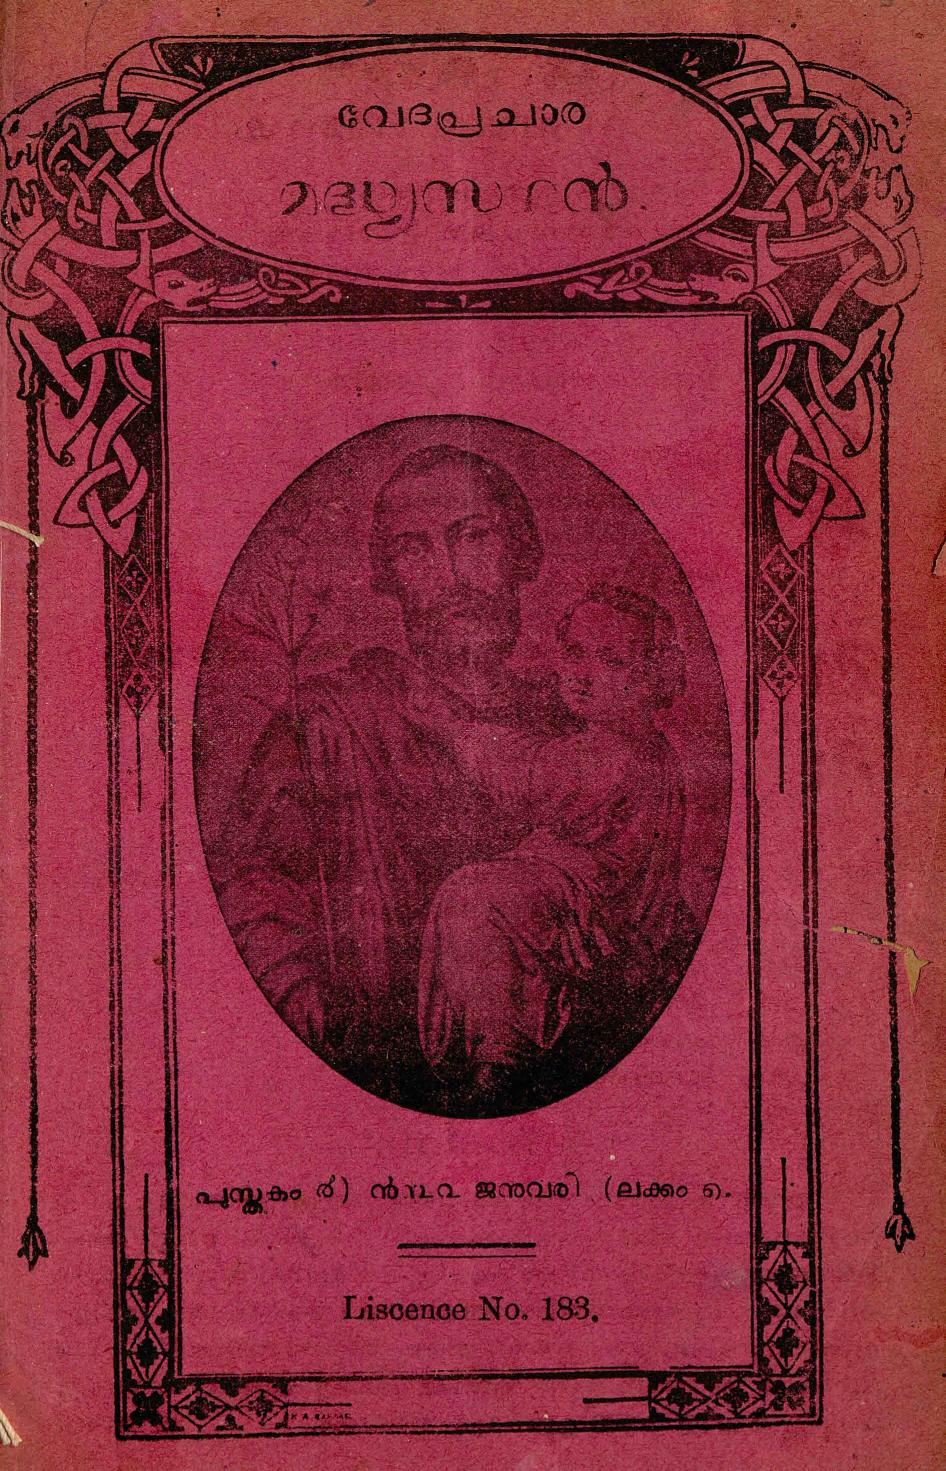 1932 – വേദപ്രചാര മദ്ധ്യസ്ഥൻ മാസികയുടെ എട്ട് ലക്കങ്ങൾ